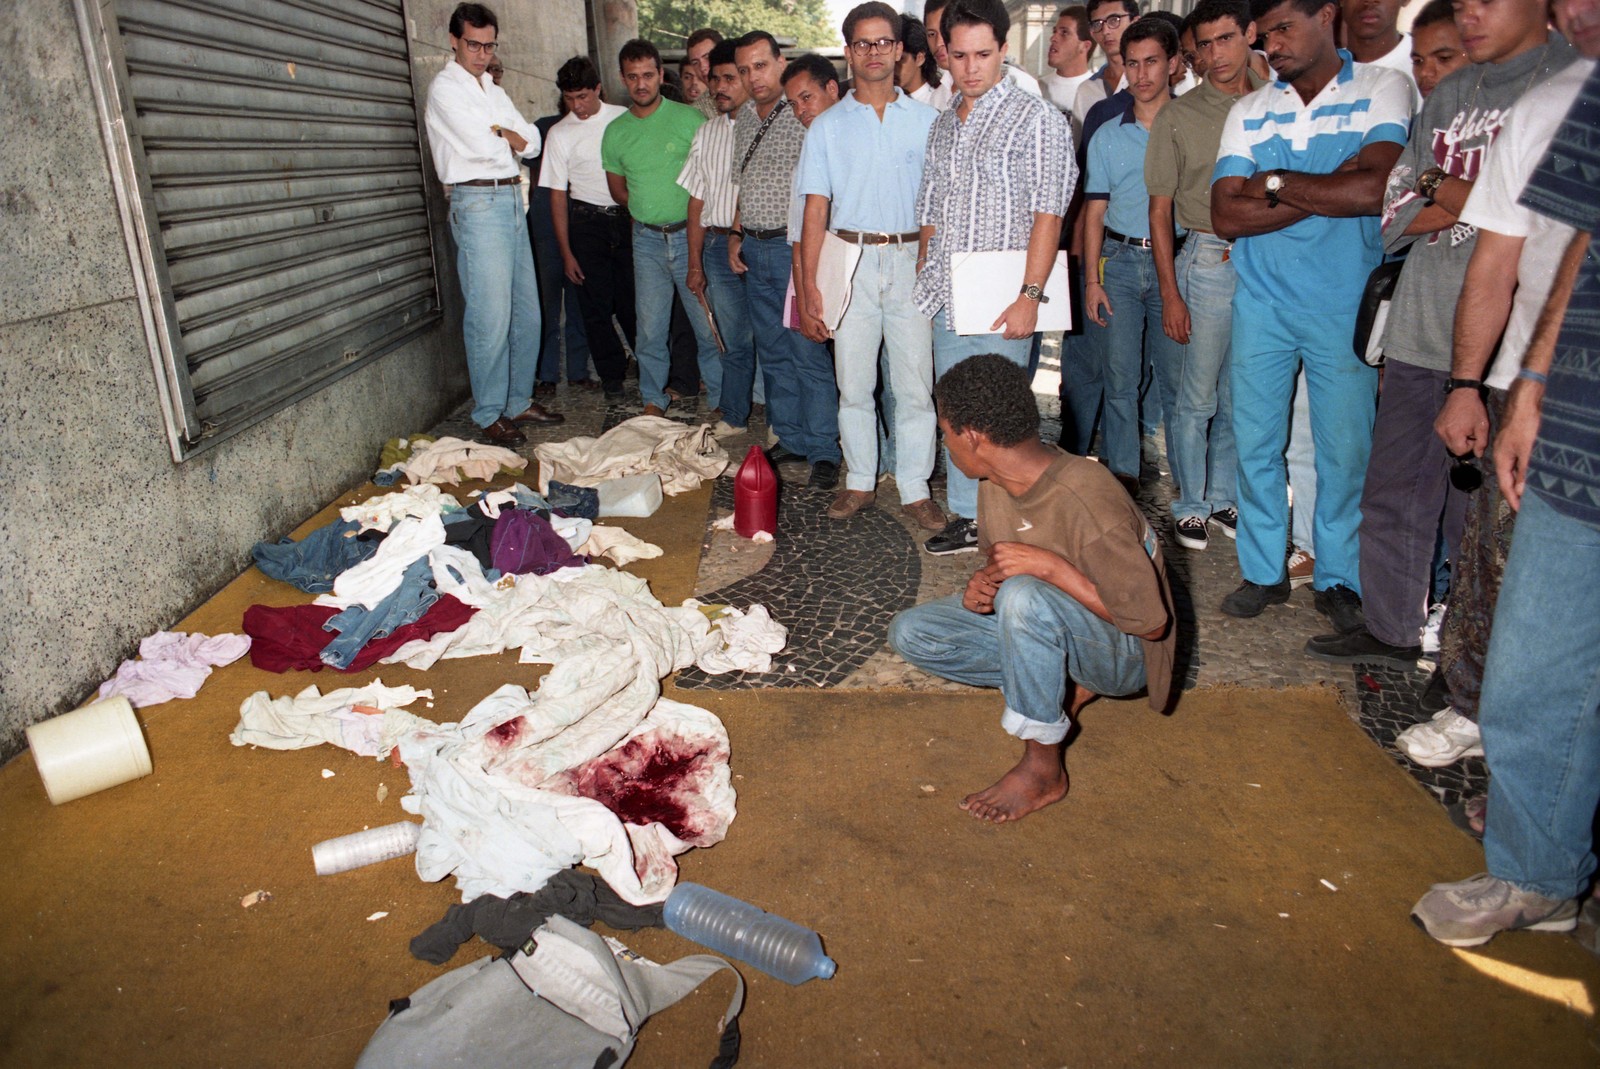 Sobrevivente observa as roupas sujas de sangue. Crime foi motivado pelo apedrejamento de um carro da PM na véspera — Foto: Ricardo Leoni / Agência O Globo